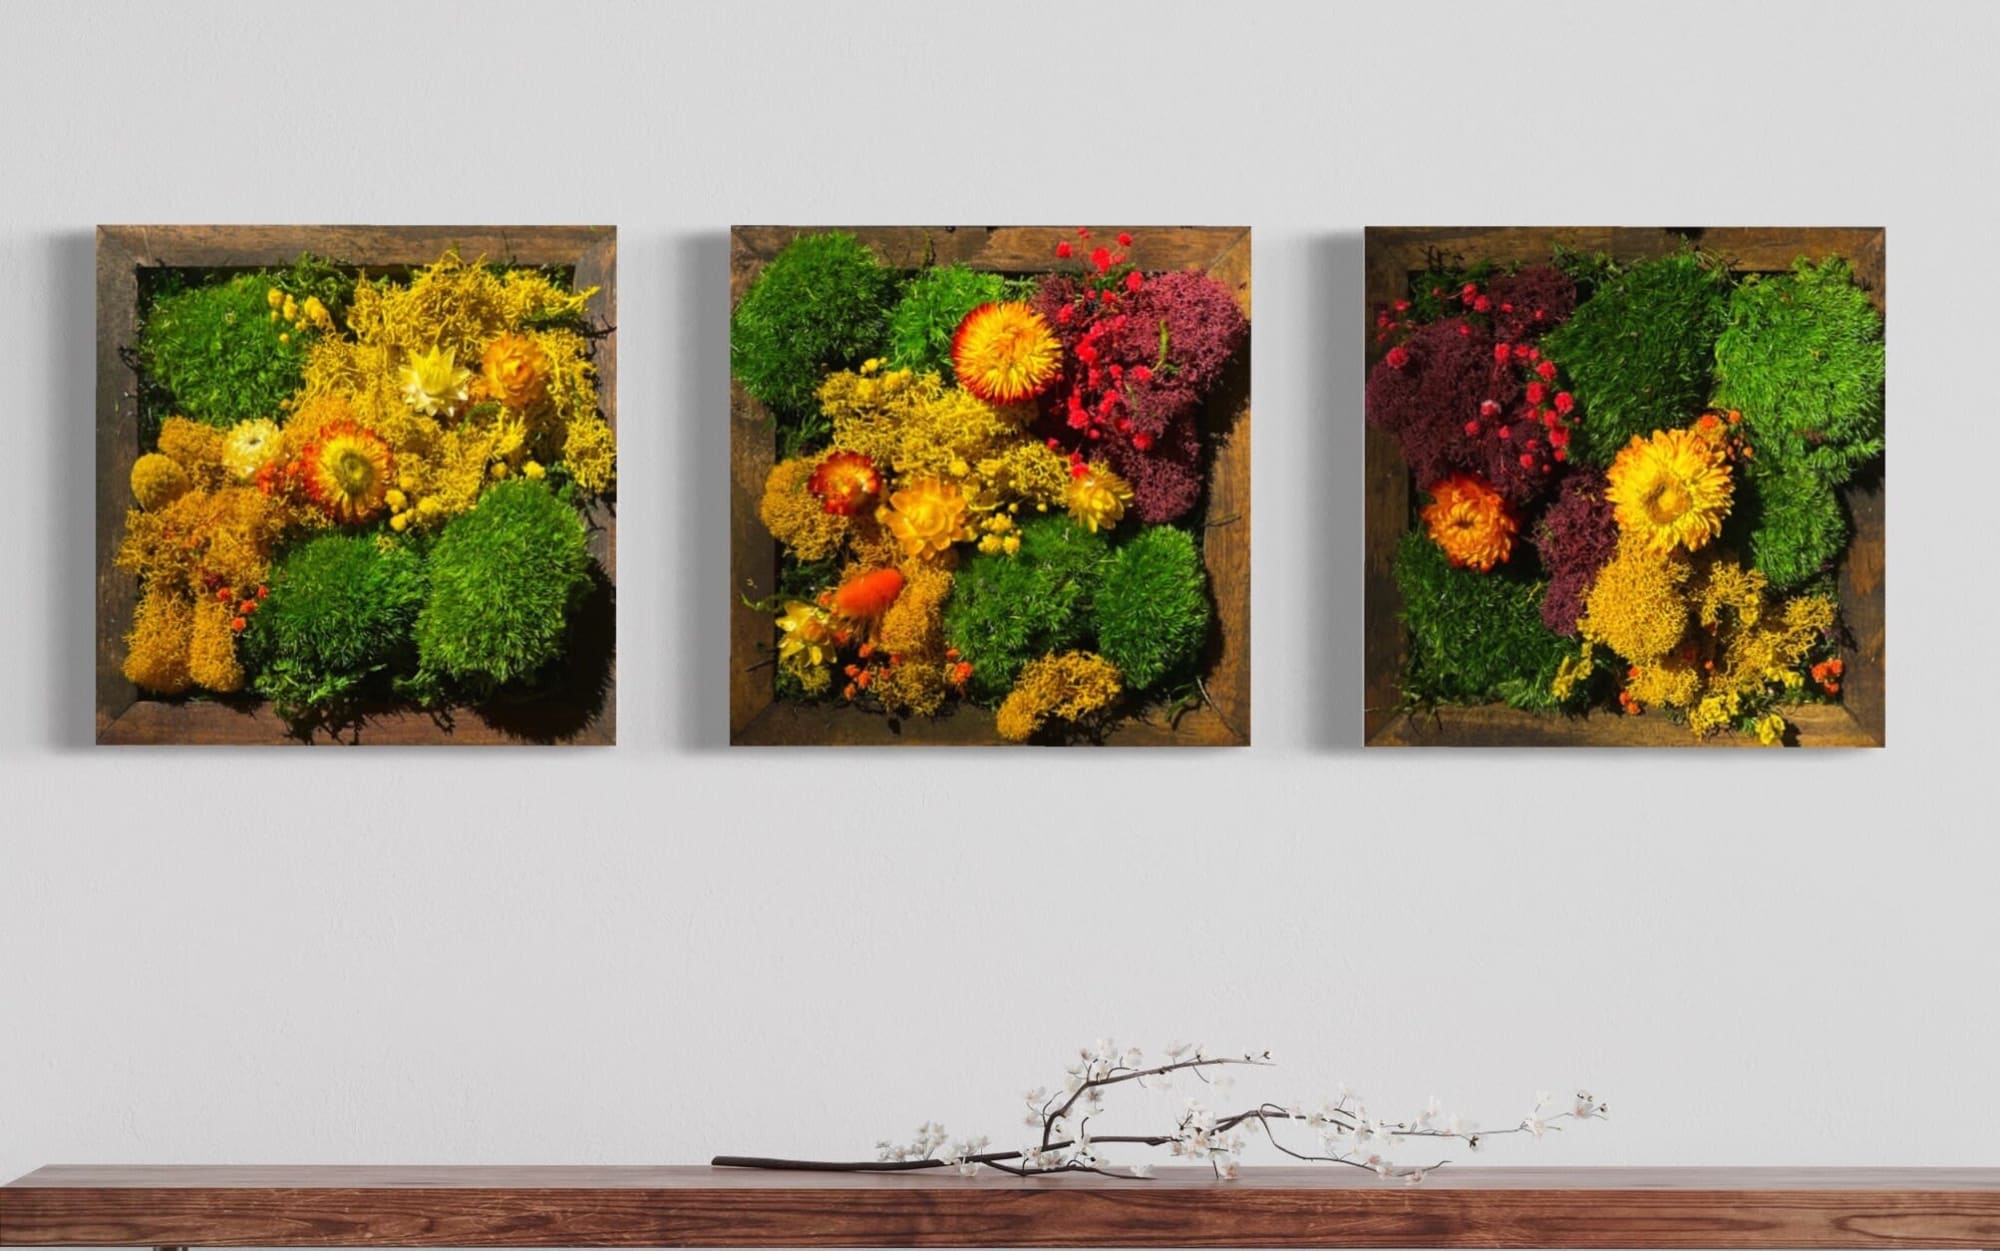 Framed Moss Wall Art Set Botanical Living Walls Sculpture by Sarah  Montgomery